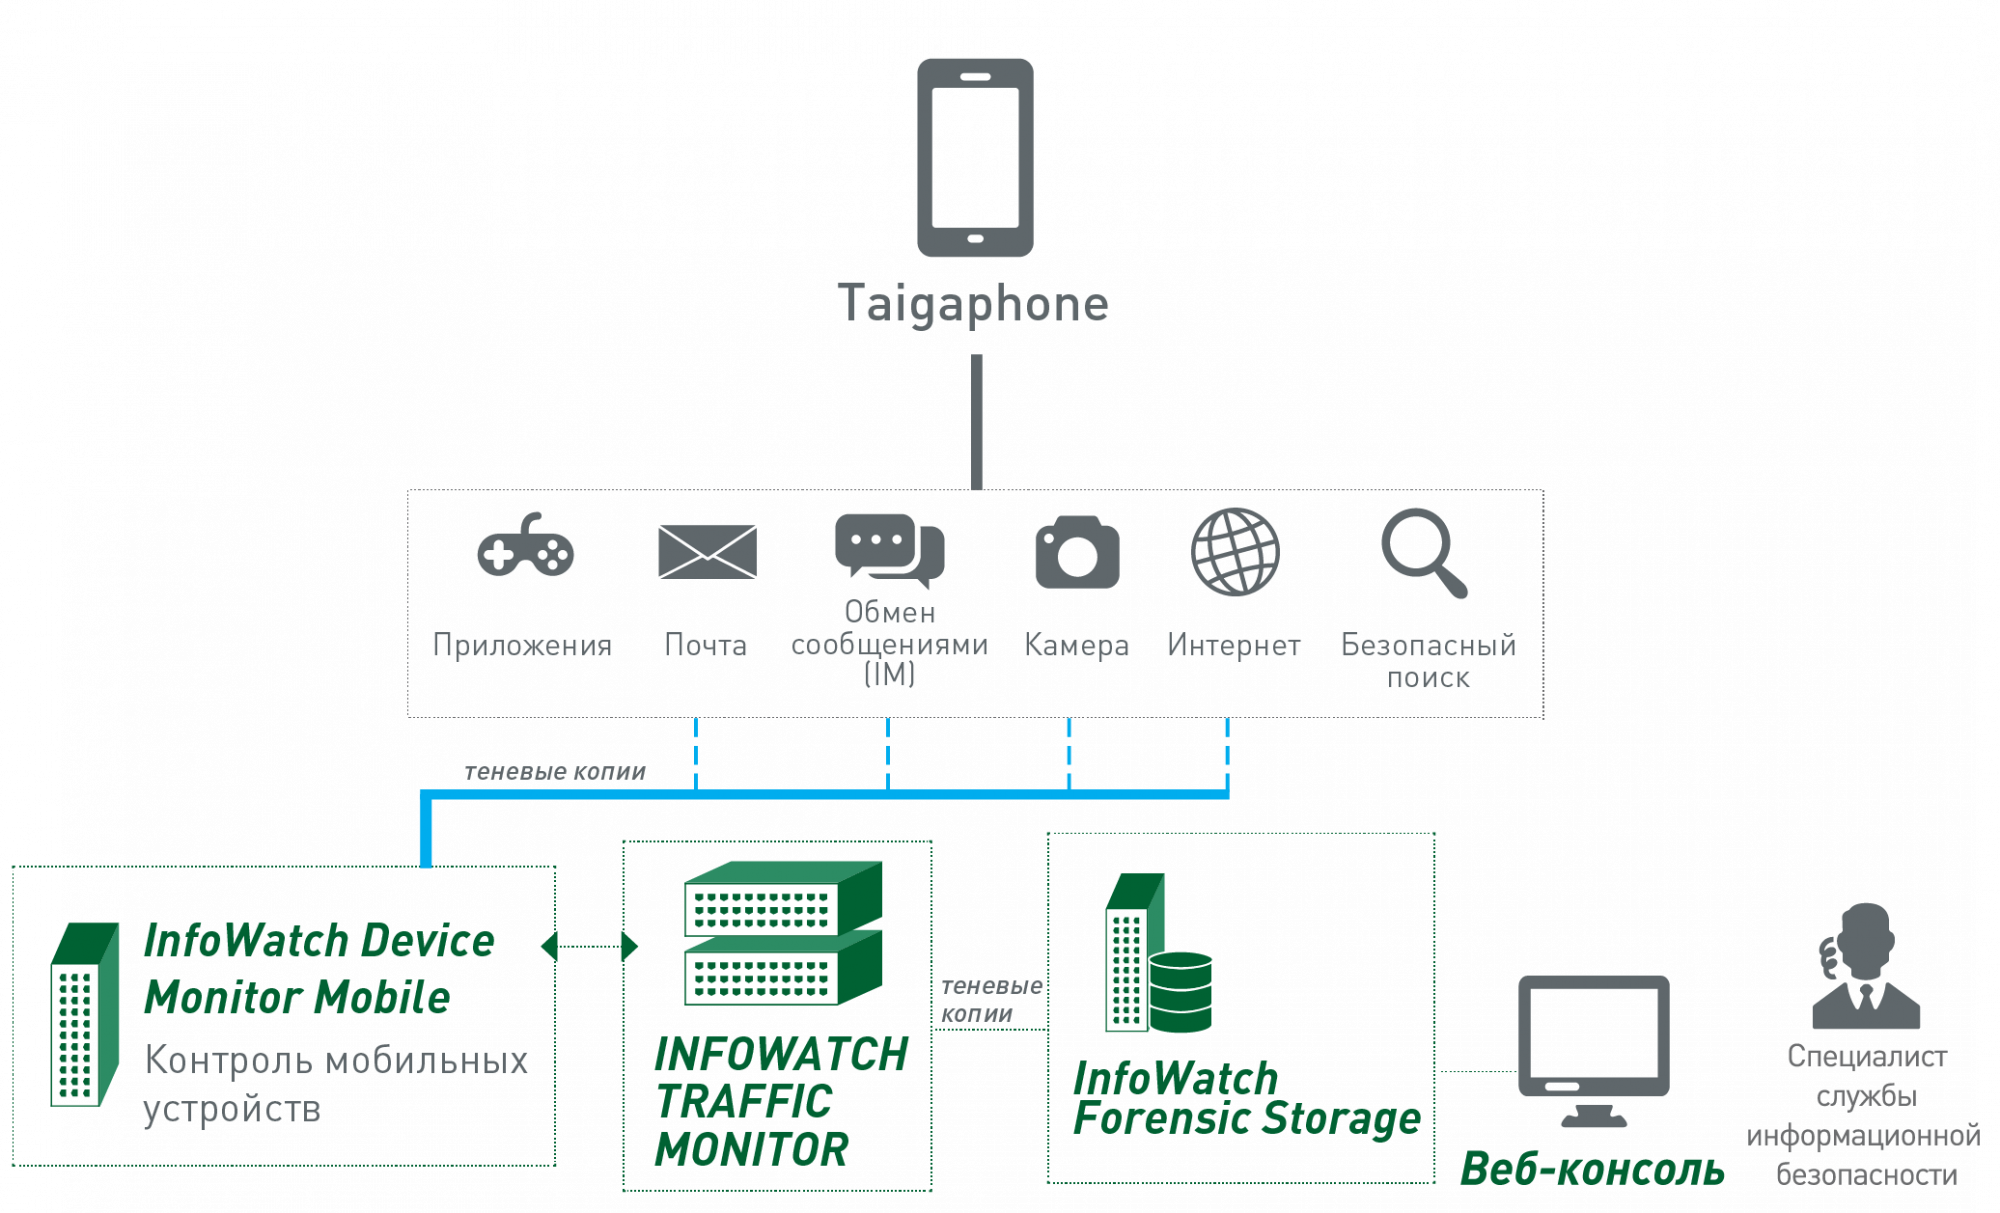 Схема интеграции «Тайгафона» с InfoWatch Traffic Monitor